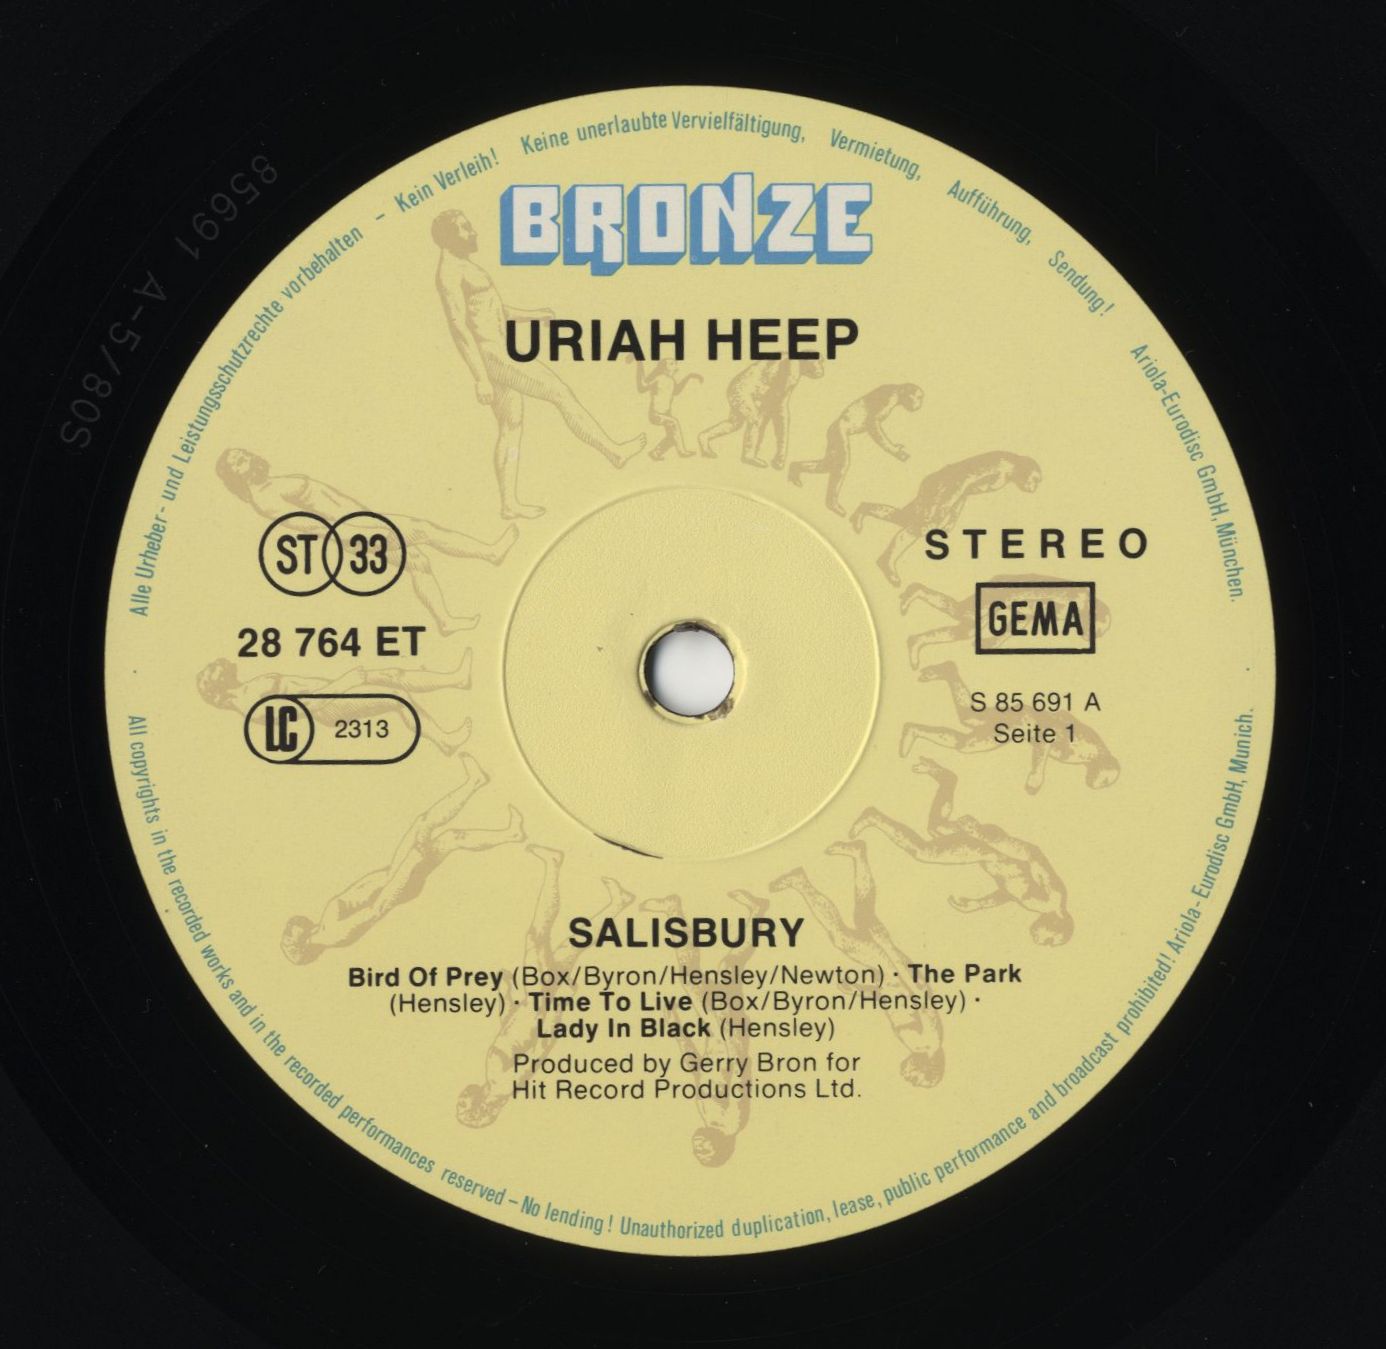 uriah heep tour dates 1980